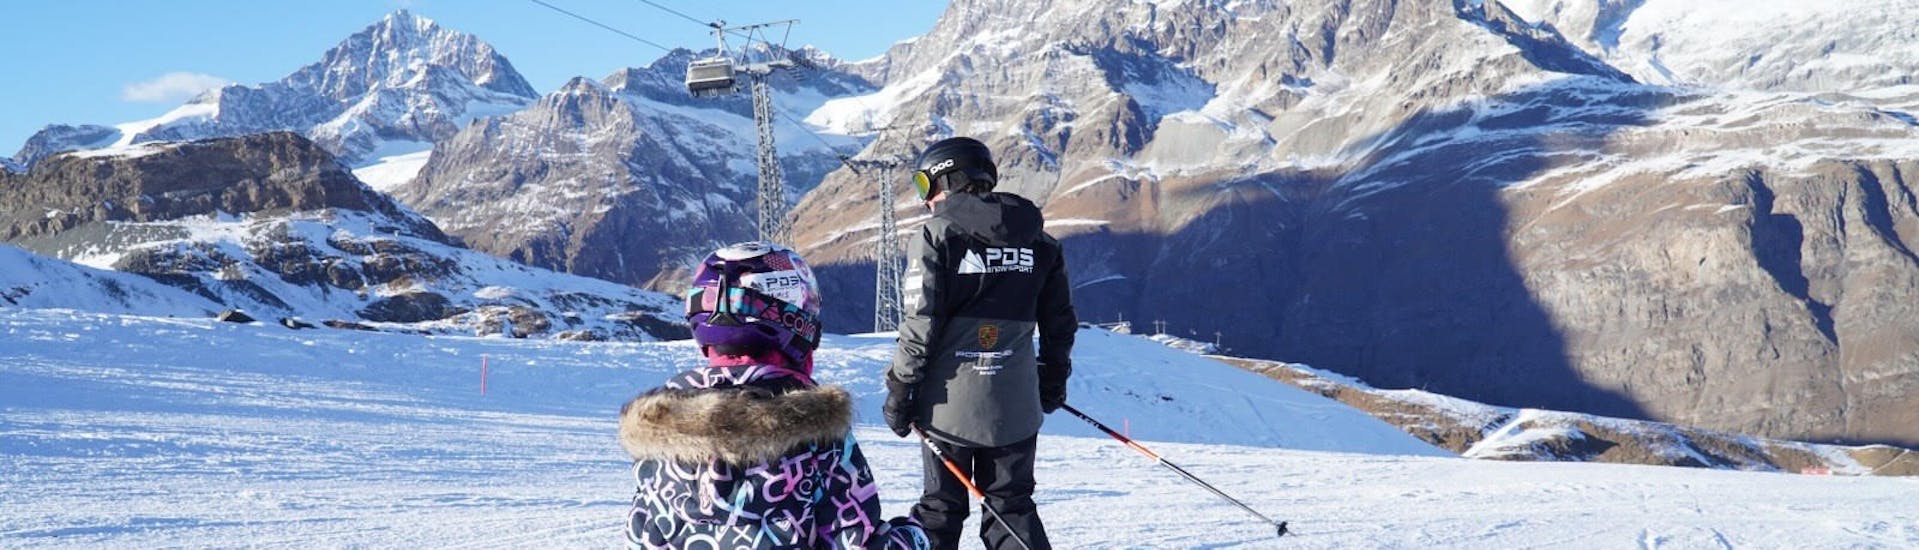 Un instructor de esquí demuestra la técnica correcta en las clases particulares de esquí para niños y adolescentes de todos los niveles con PDS Snowsport - Escuela de esquí y snowboard.